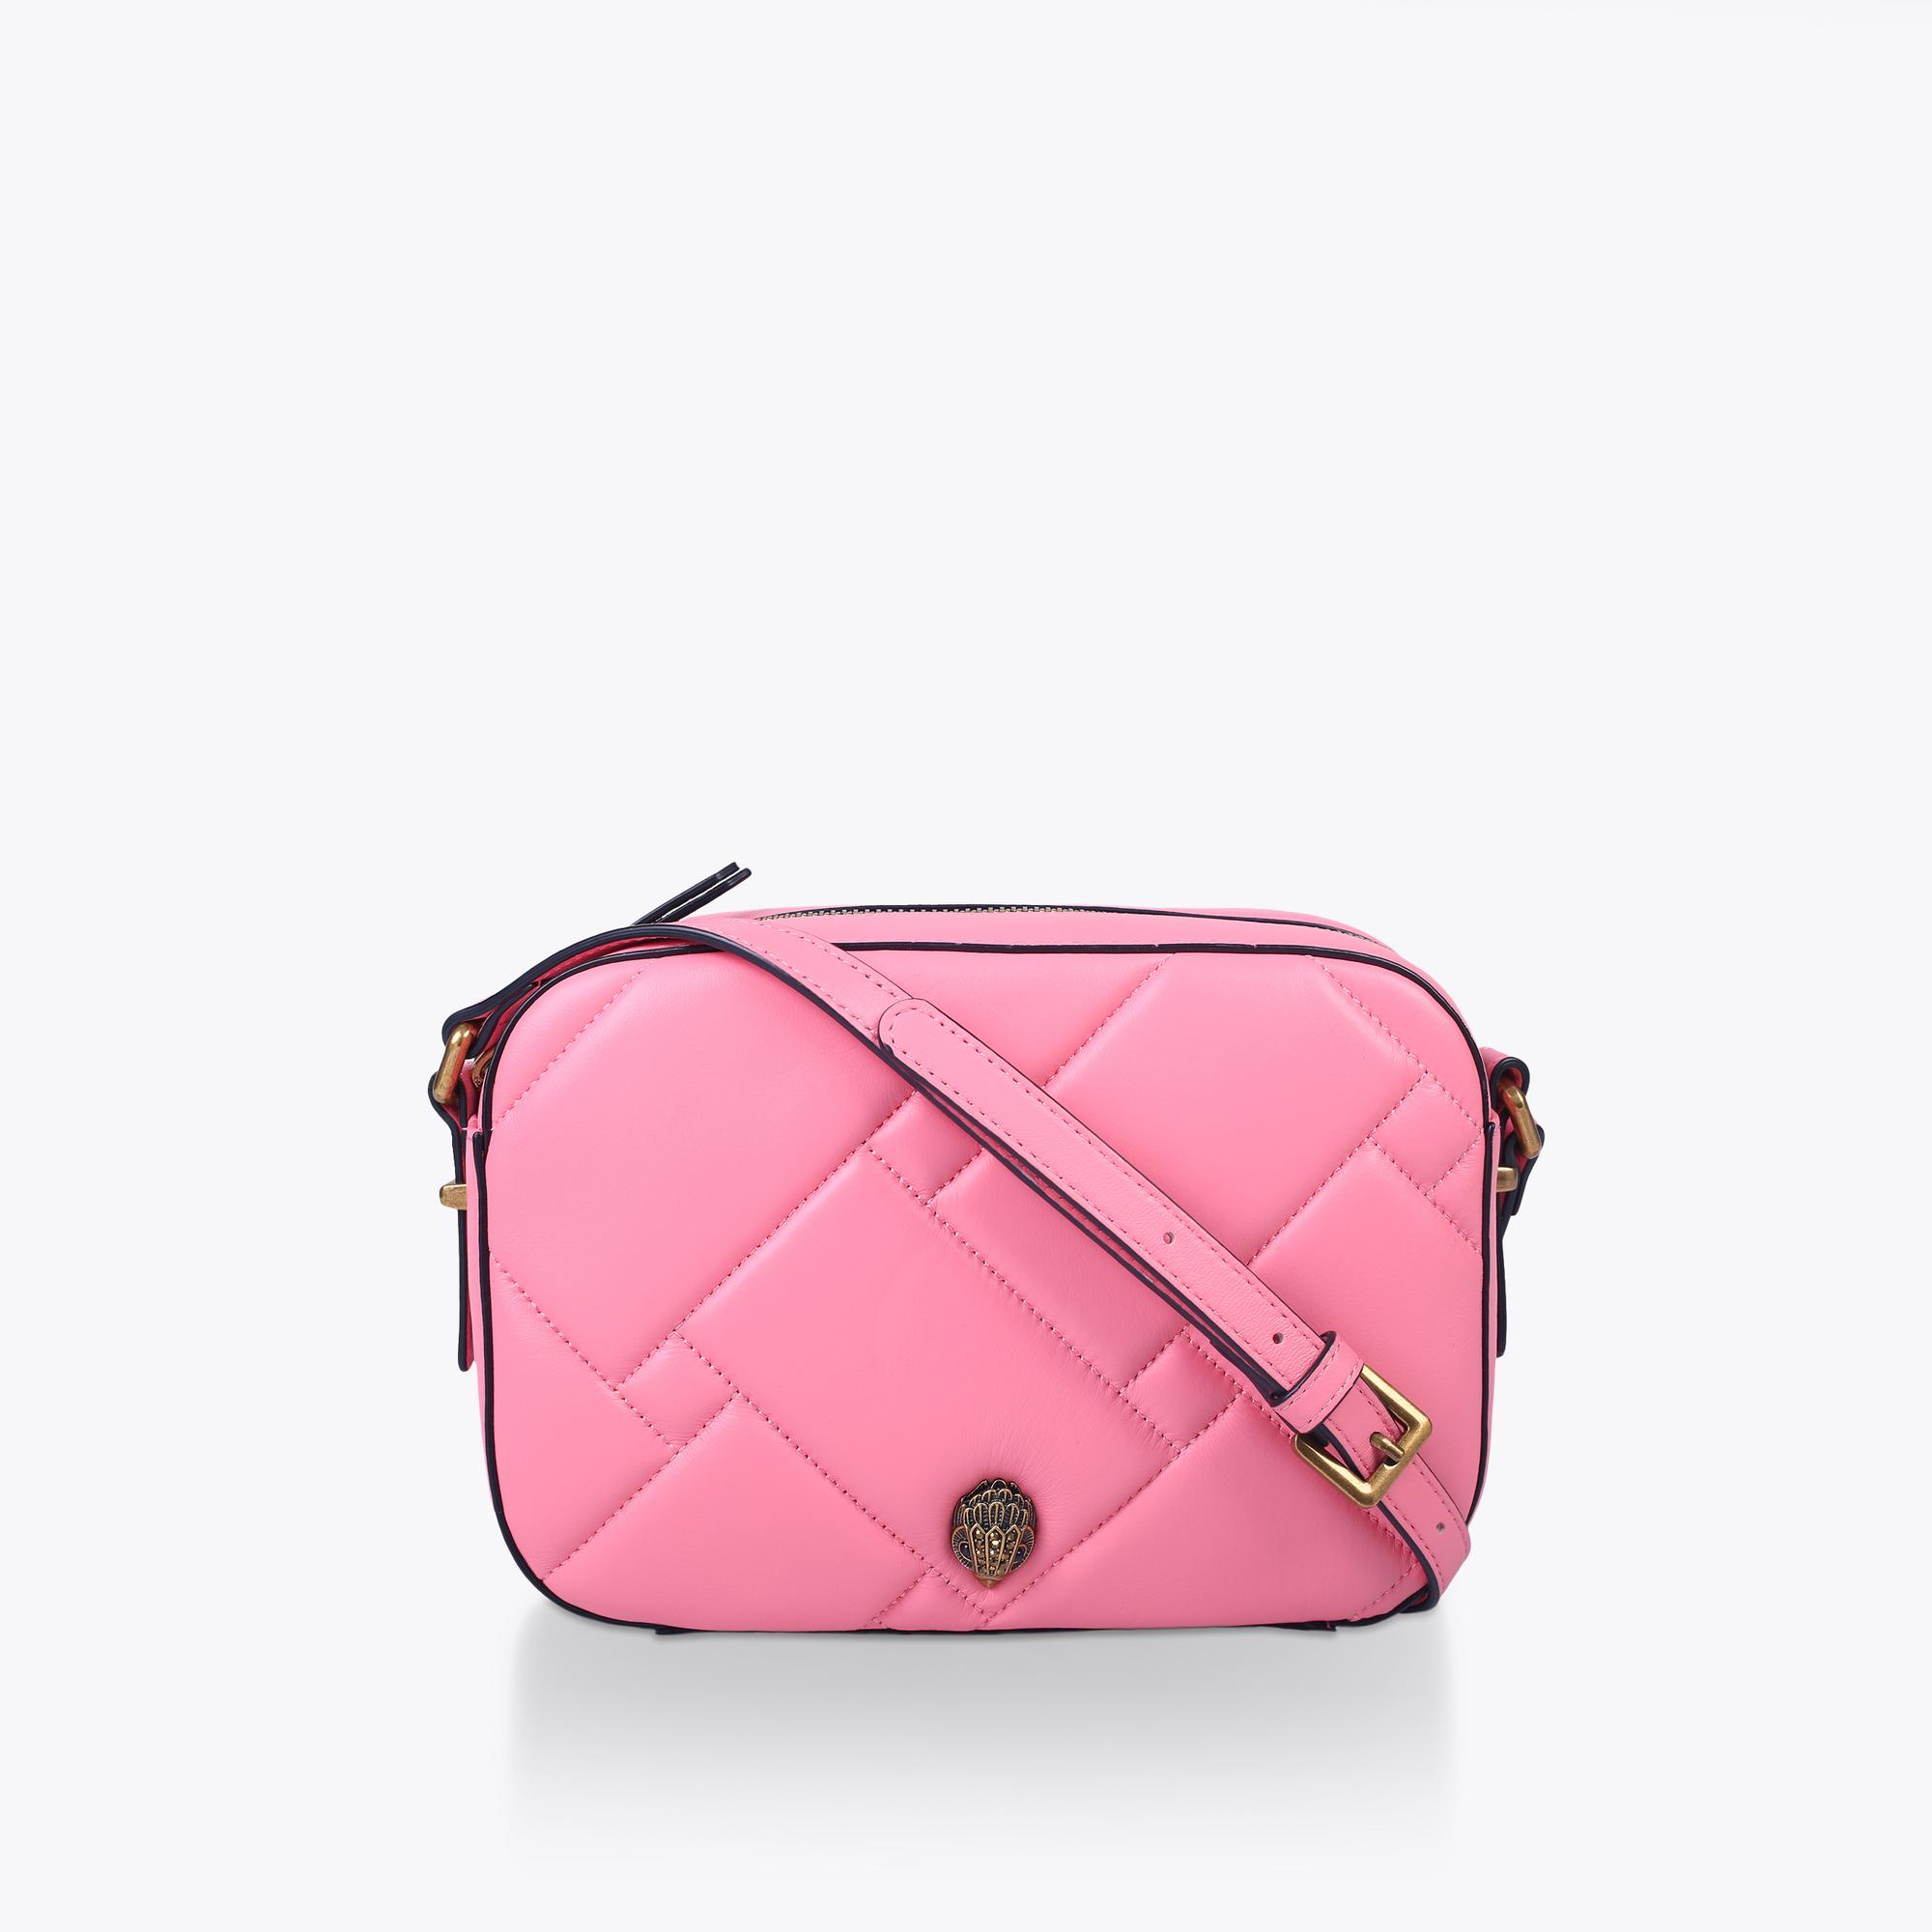 bag soft pink